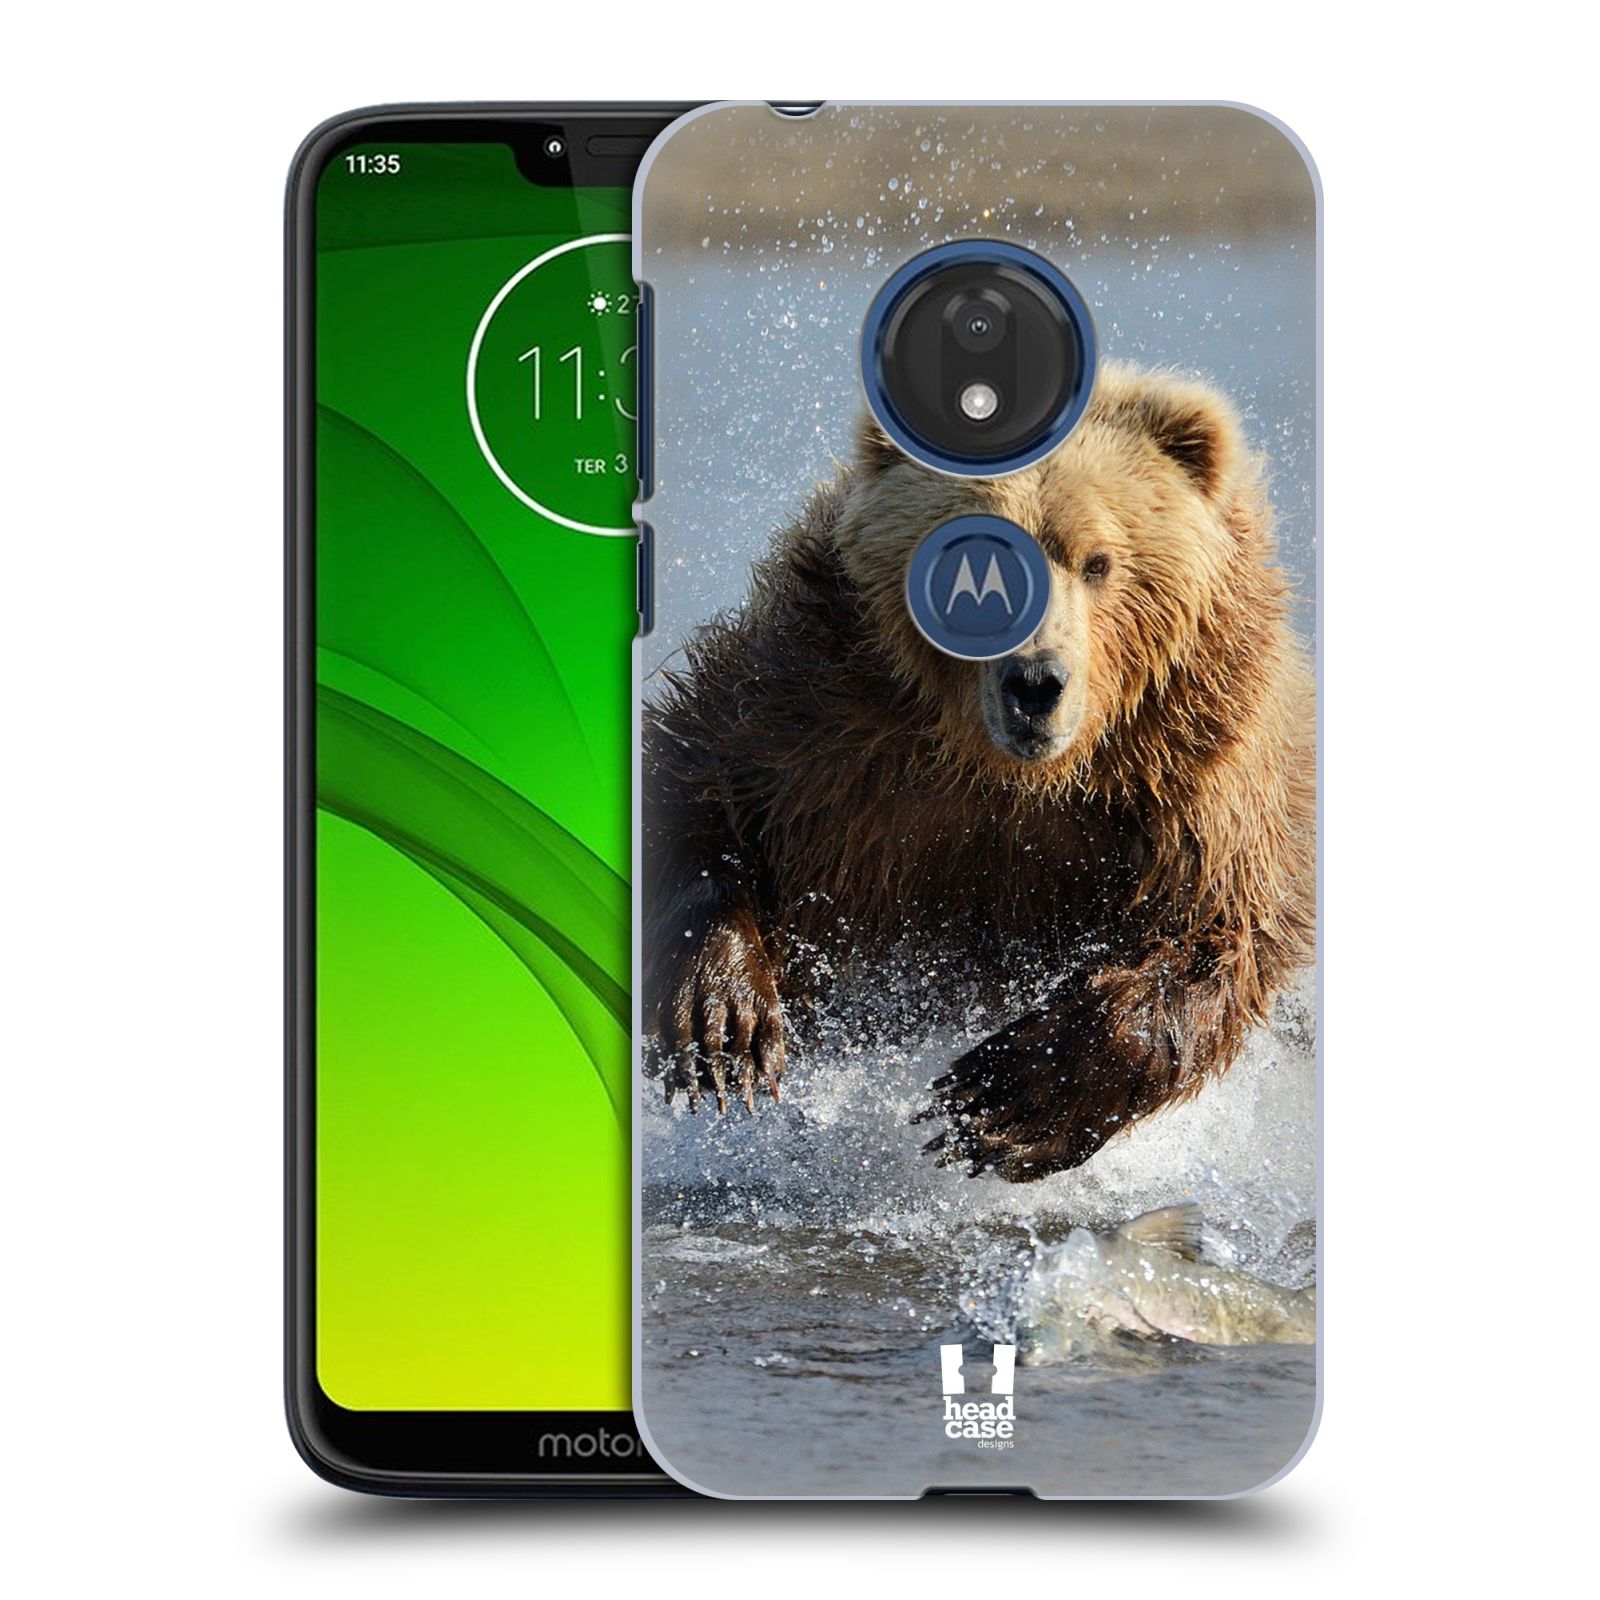 Pouzdro na mobil Motorola Moto G7 Play vzor Divočina, Divoký život a zvířata foto MEDVĚD GRIZZLY HŇEDÁ